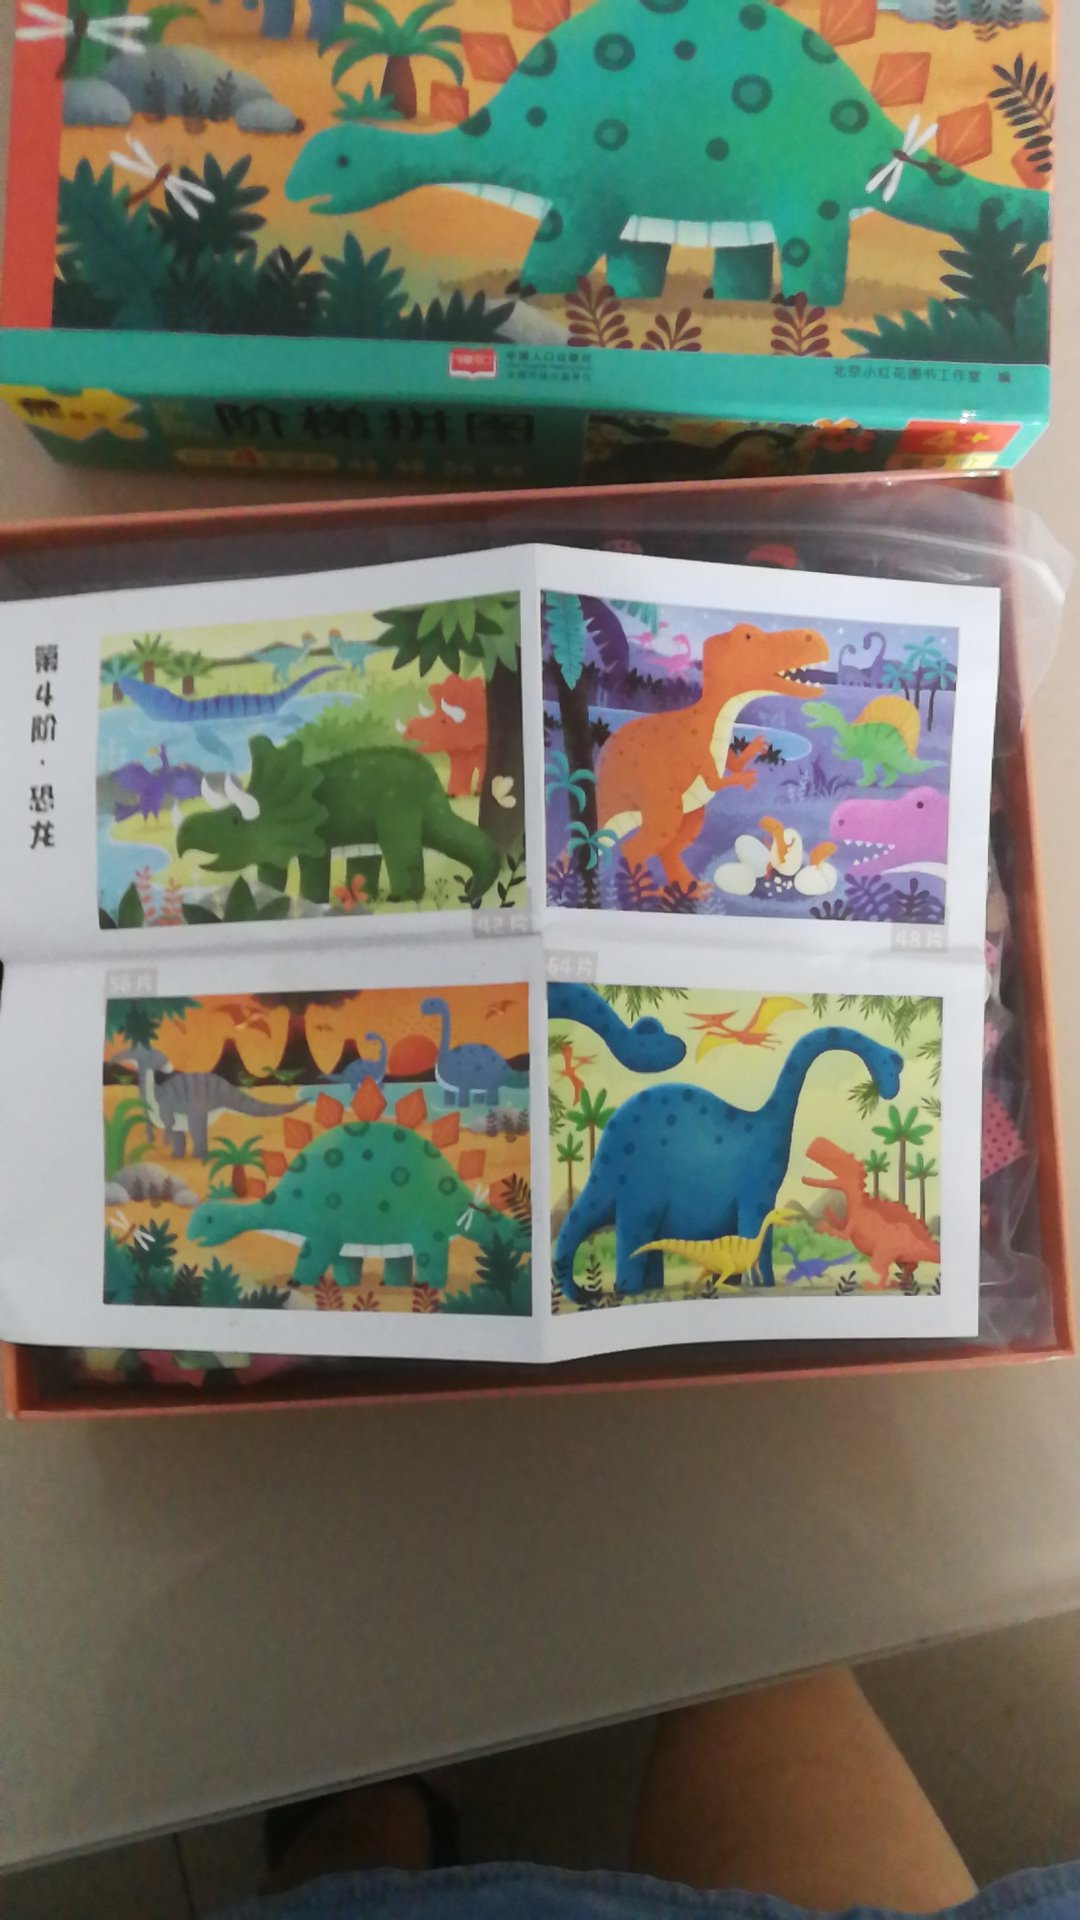 四个拼图 都是恐龙的 颜色鲜亮 孩子很喜欢